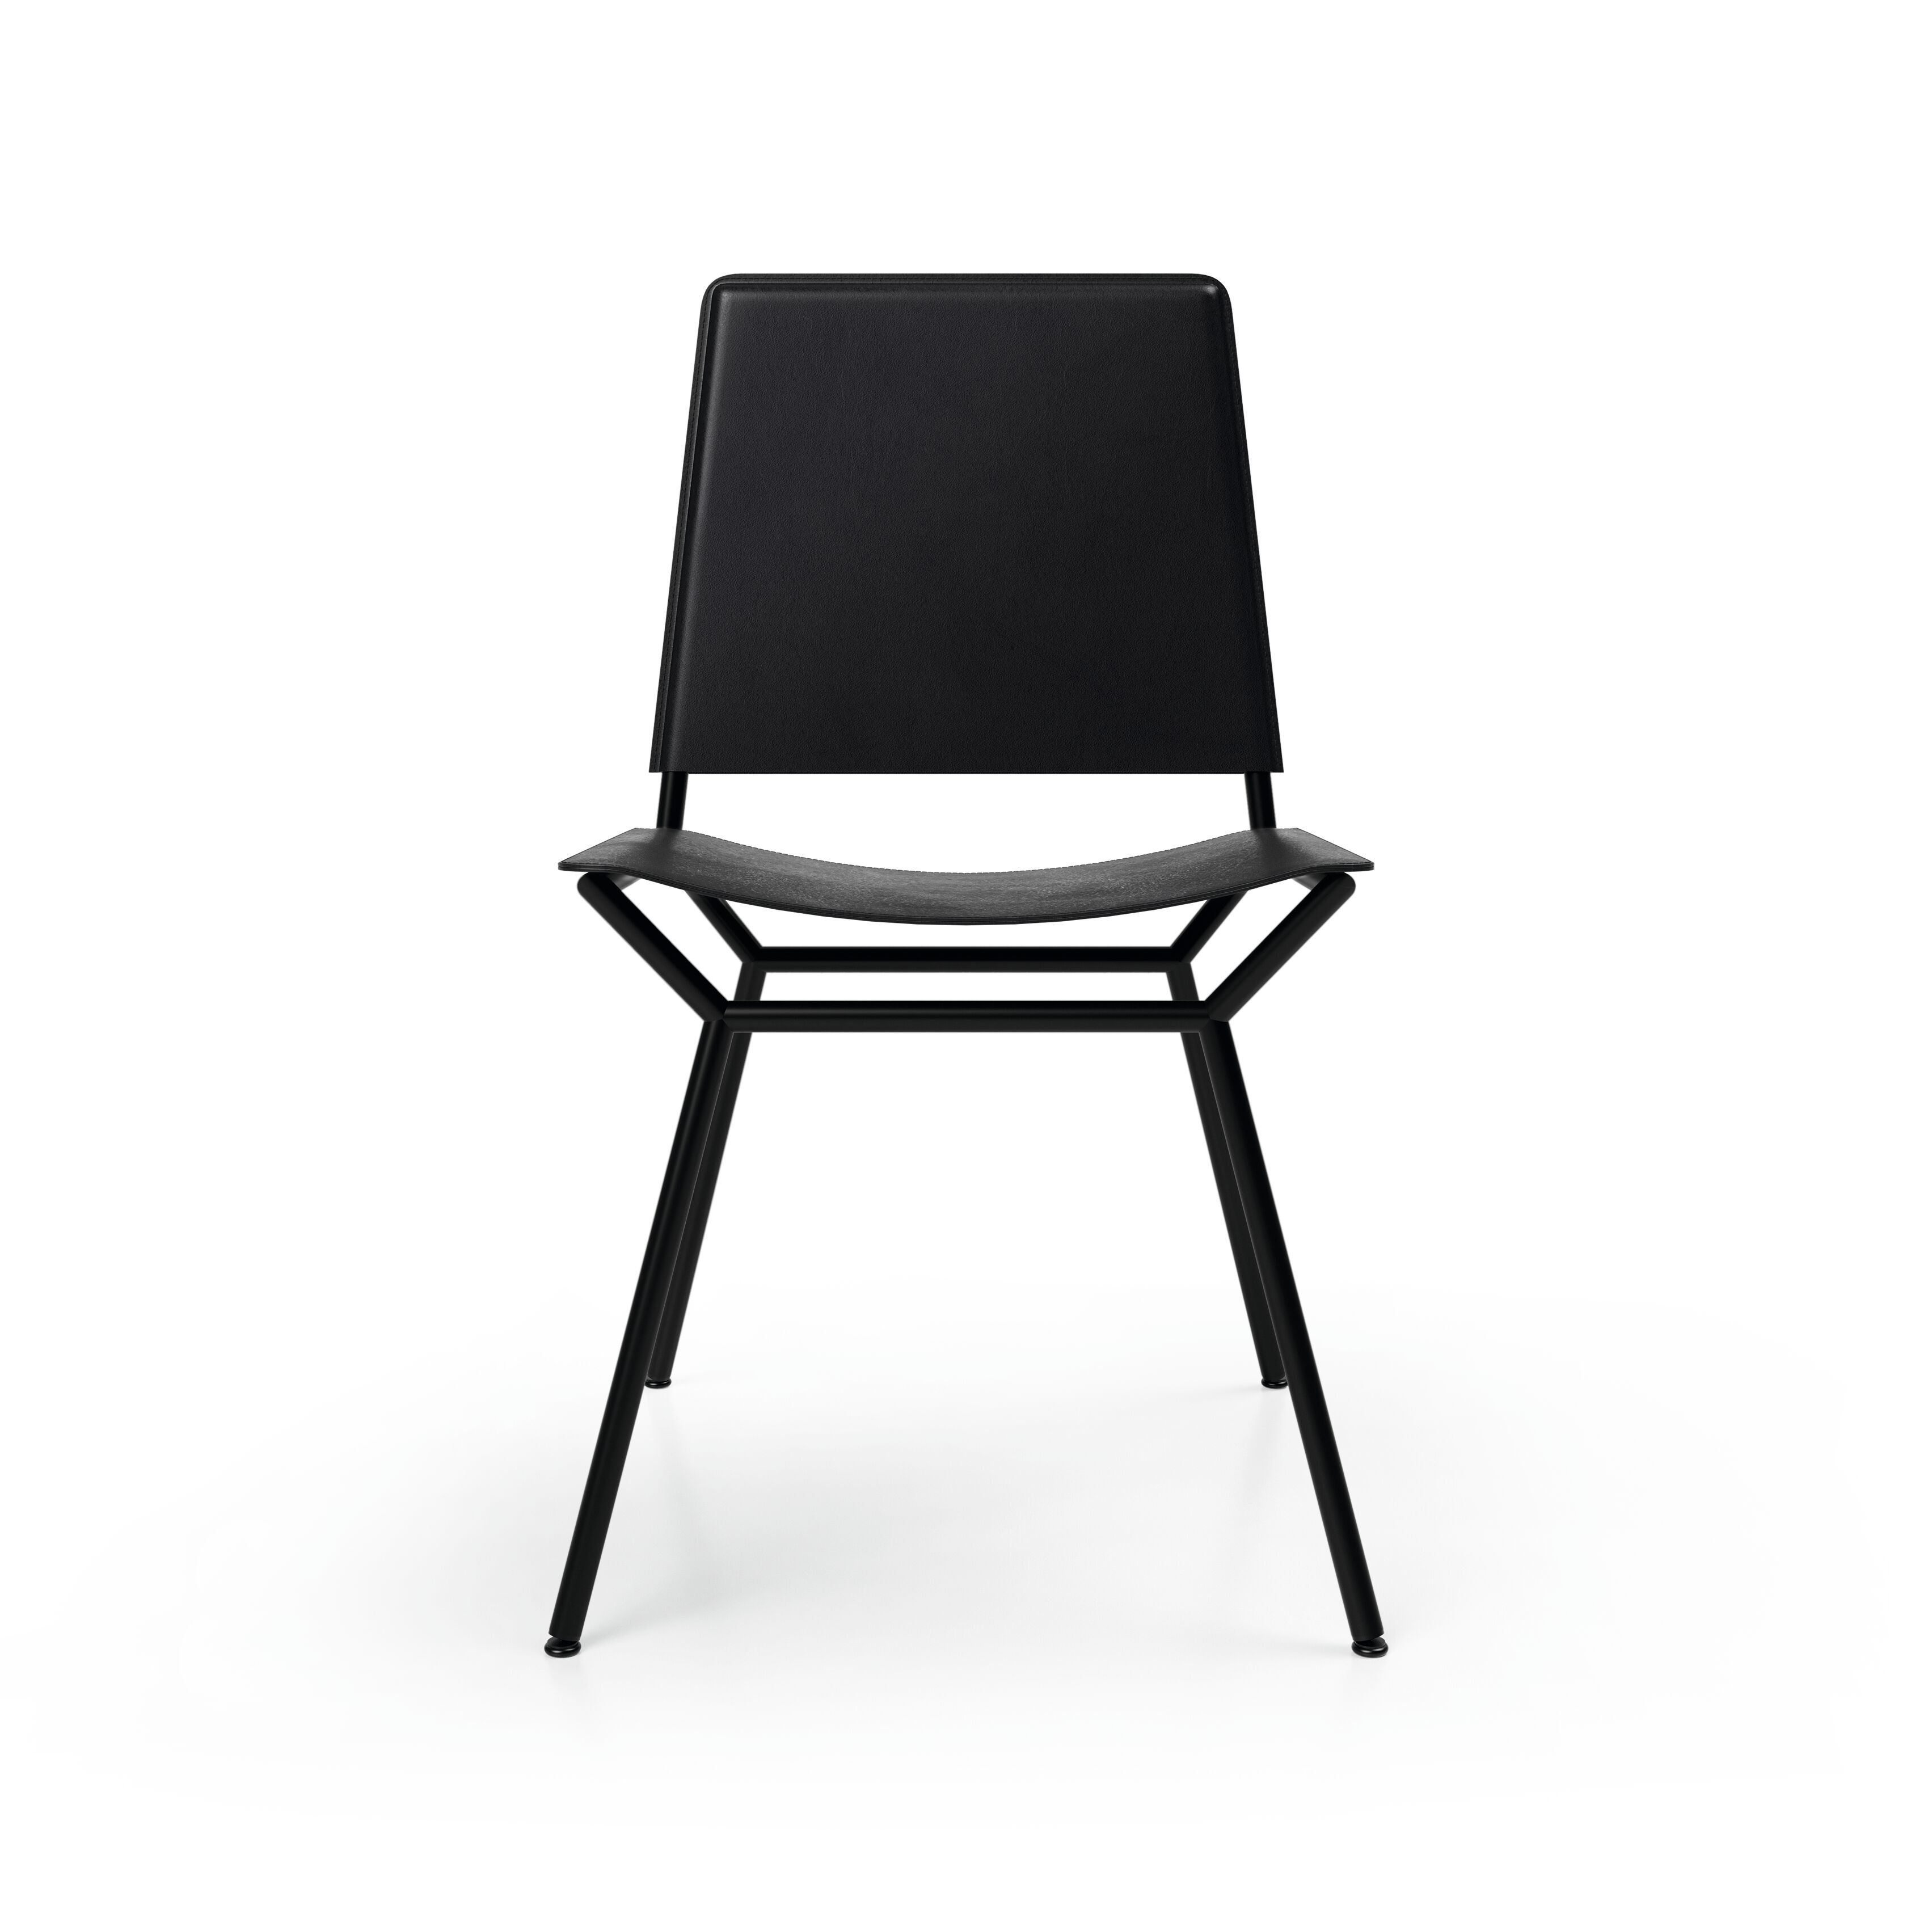 01_WK-Aisuu-Chair-0001.tif